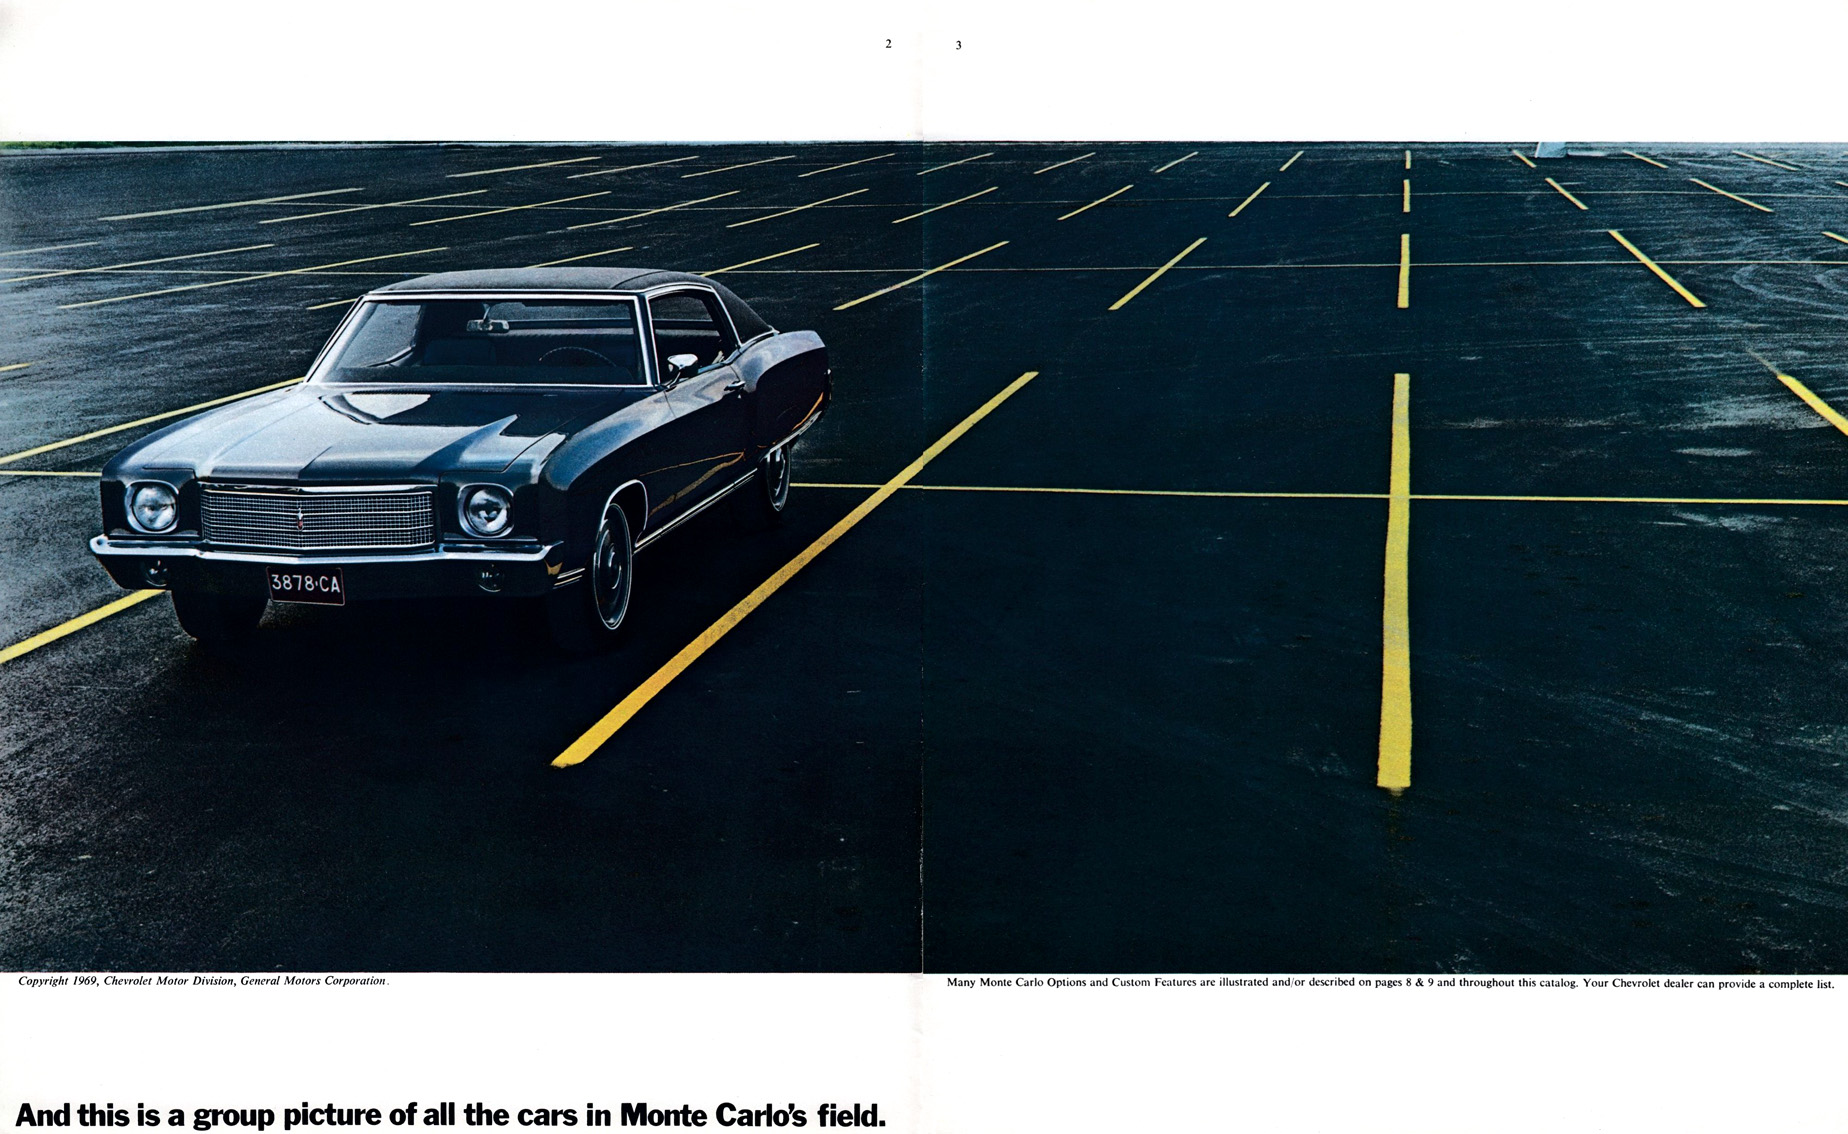 1970 Monte Carlo OEM Brochure.